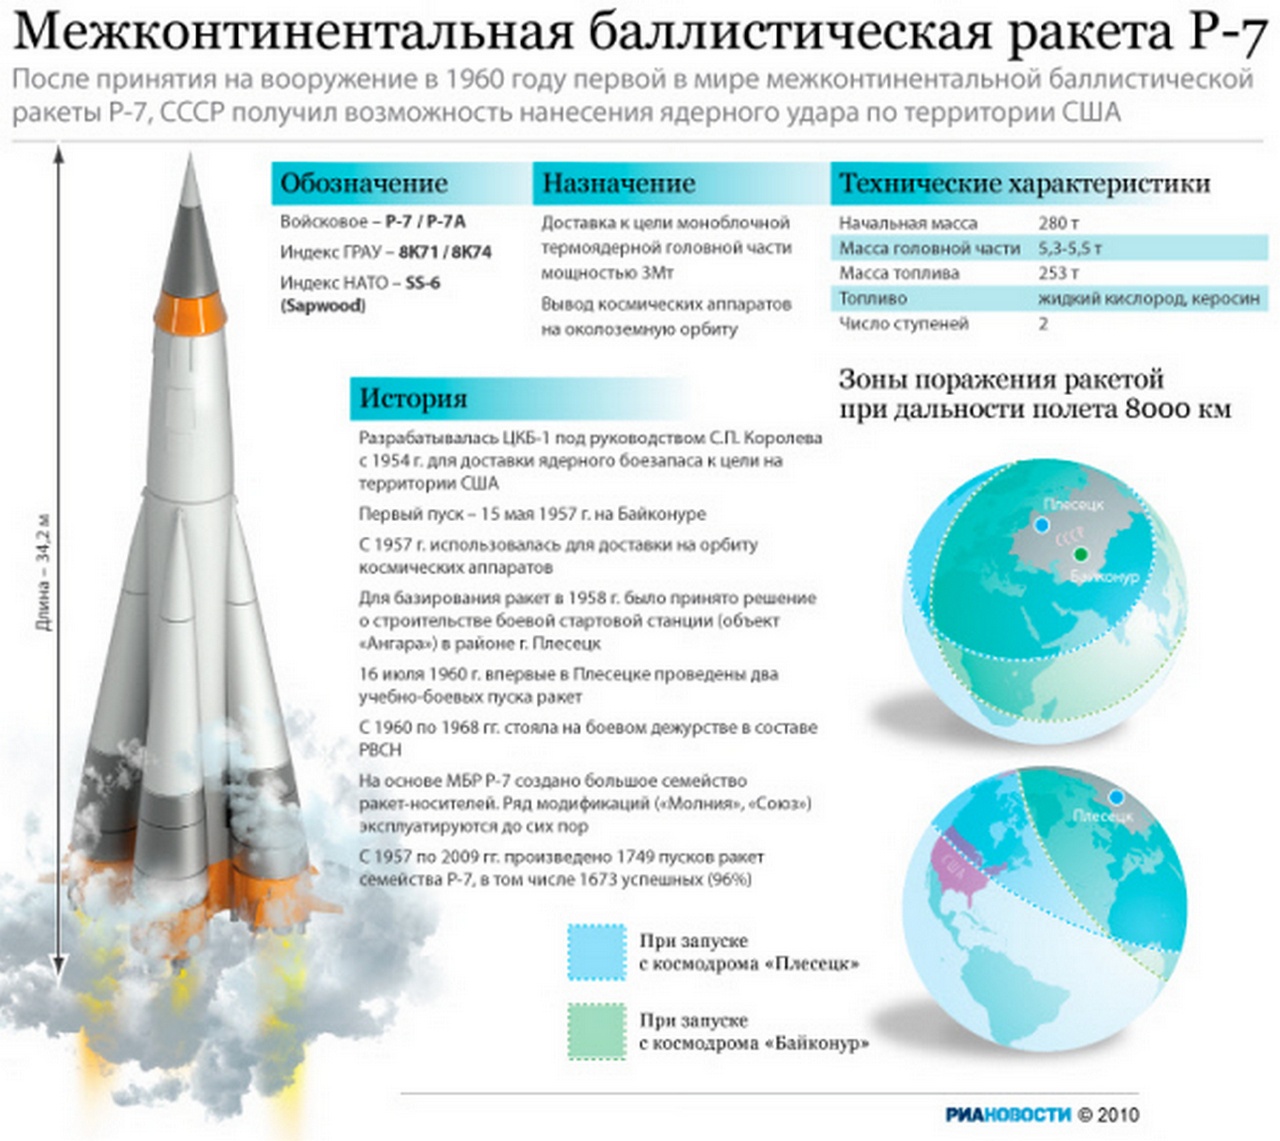 После принятия на вооружение первой в мире межконтинентальной баллистической ракеты Р-7, СССР получил возможность нанесения ядерного удара по территории США.